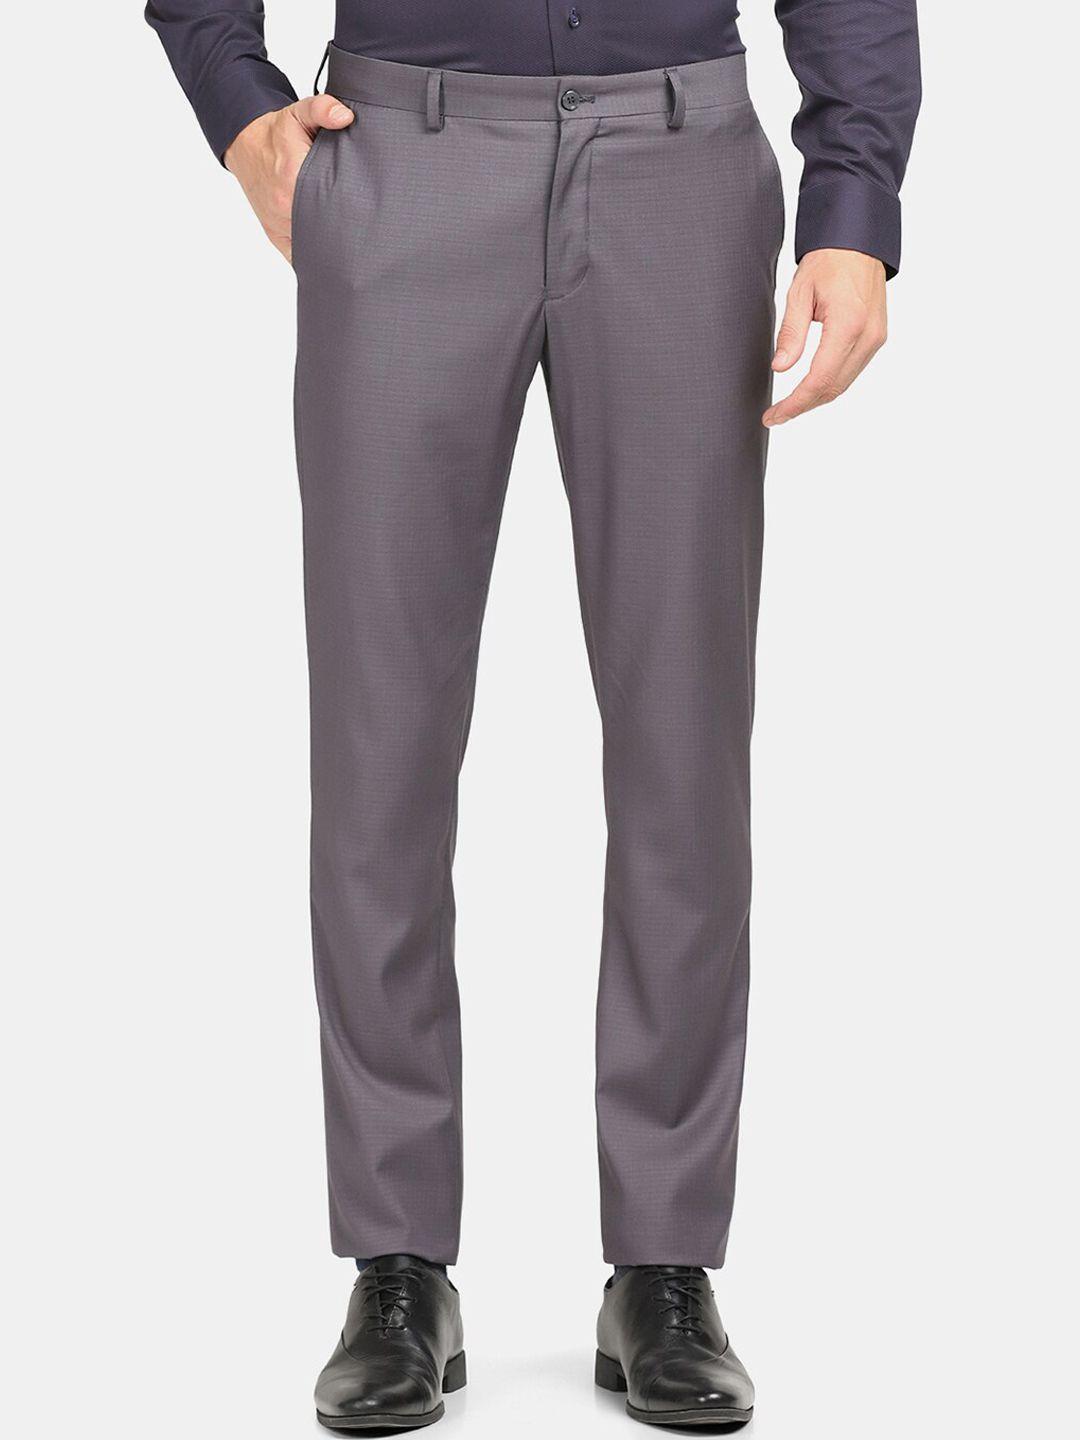 blackberrys-men-grey-slim-fit-trousers